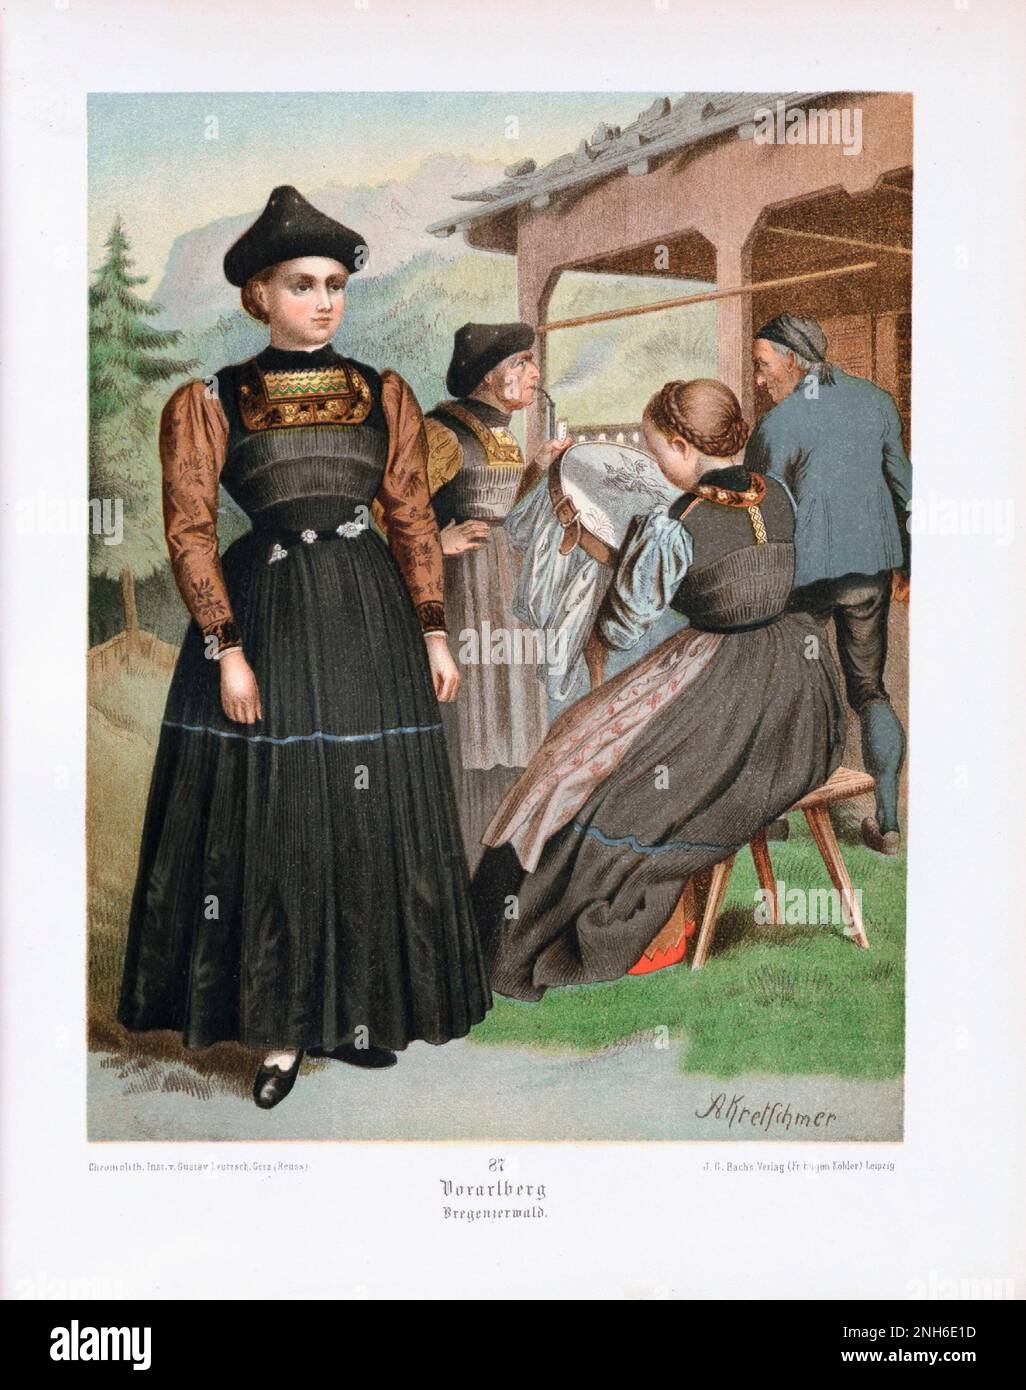 Disfraz folclórico alemán. Vorarlberg (estado más occidental de Austria), Bregenzerwald. litografía del siglo 19th. Foto de stock